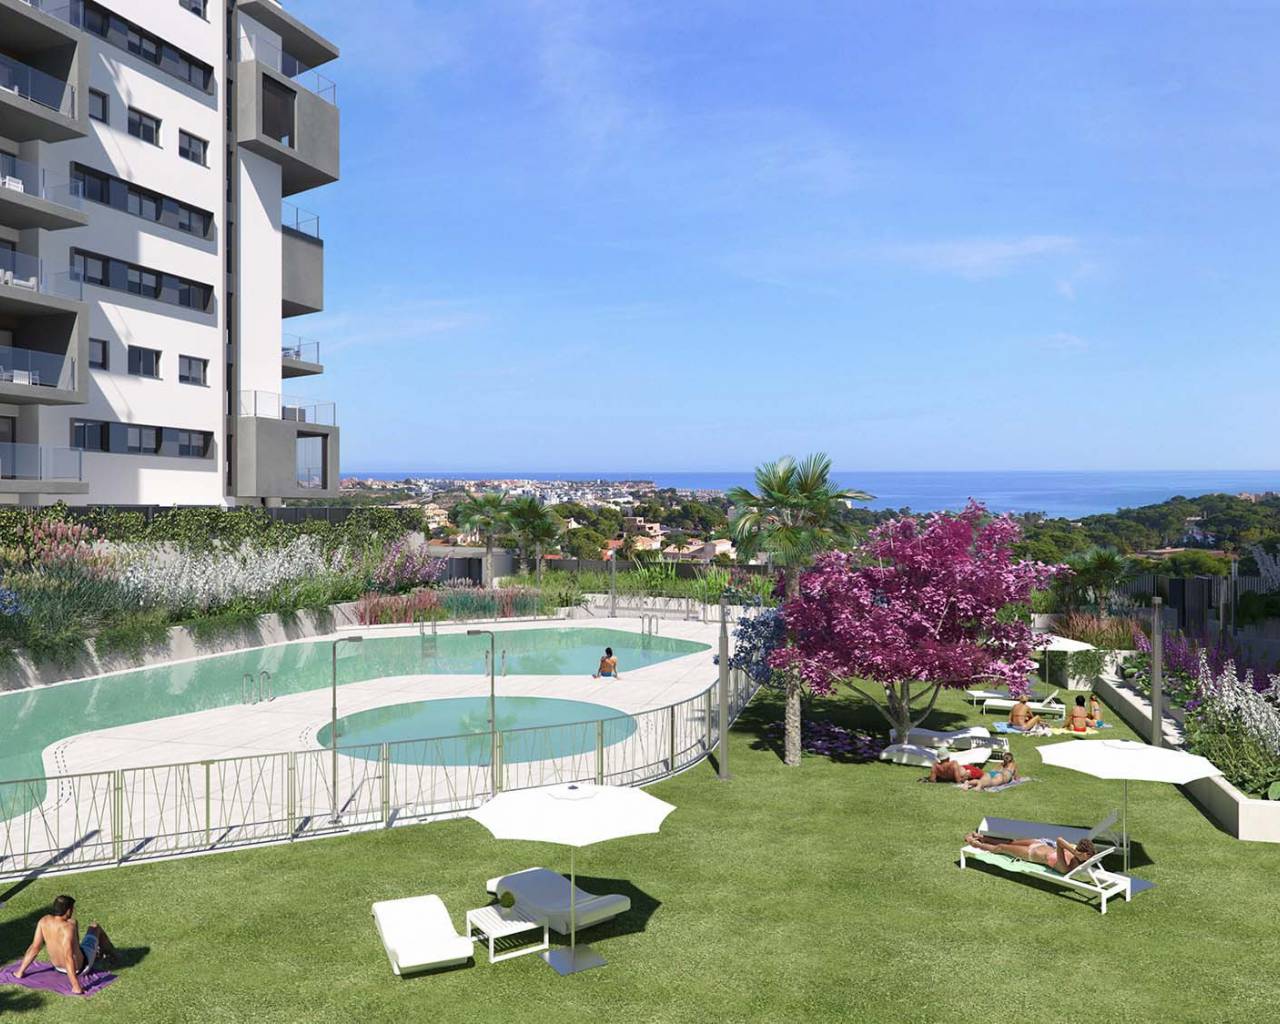 Wohnung in der Nähe des Meeres zu verkaufen in Alicante Spanien